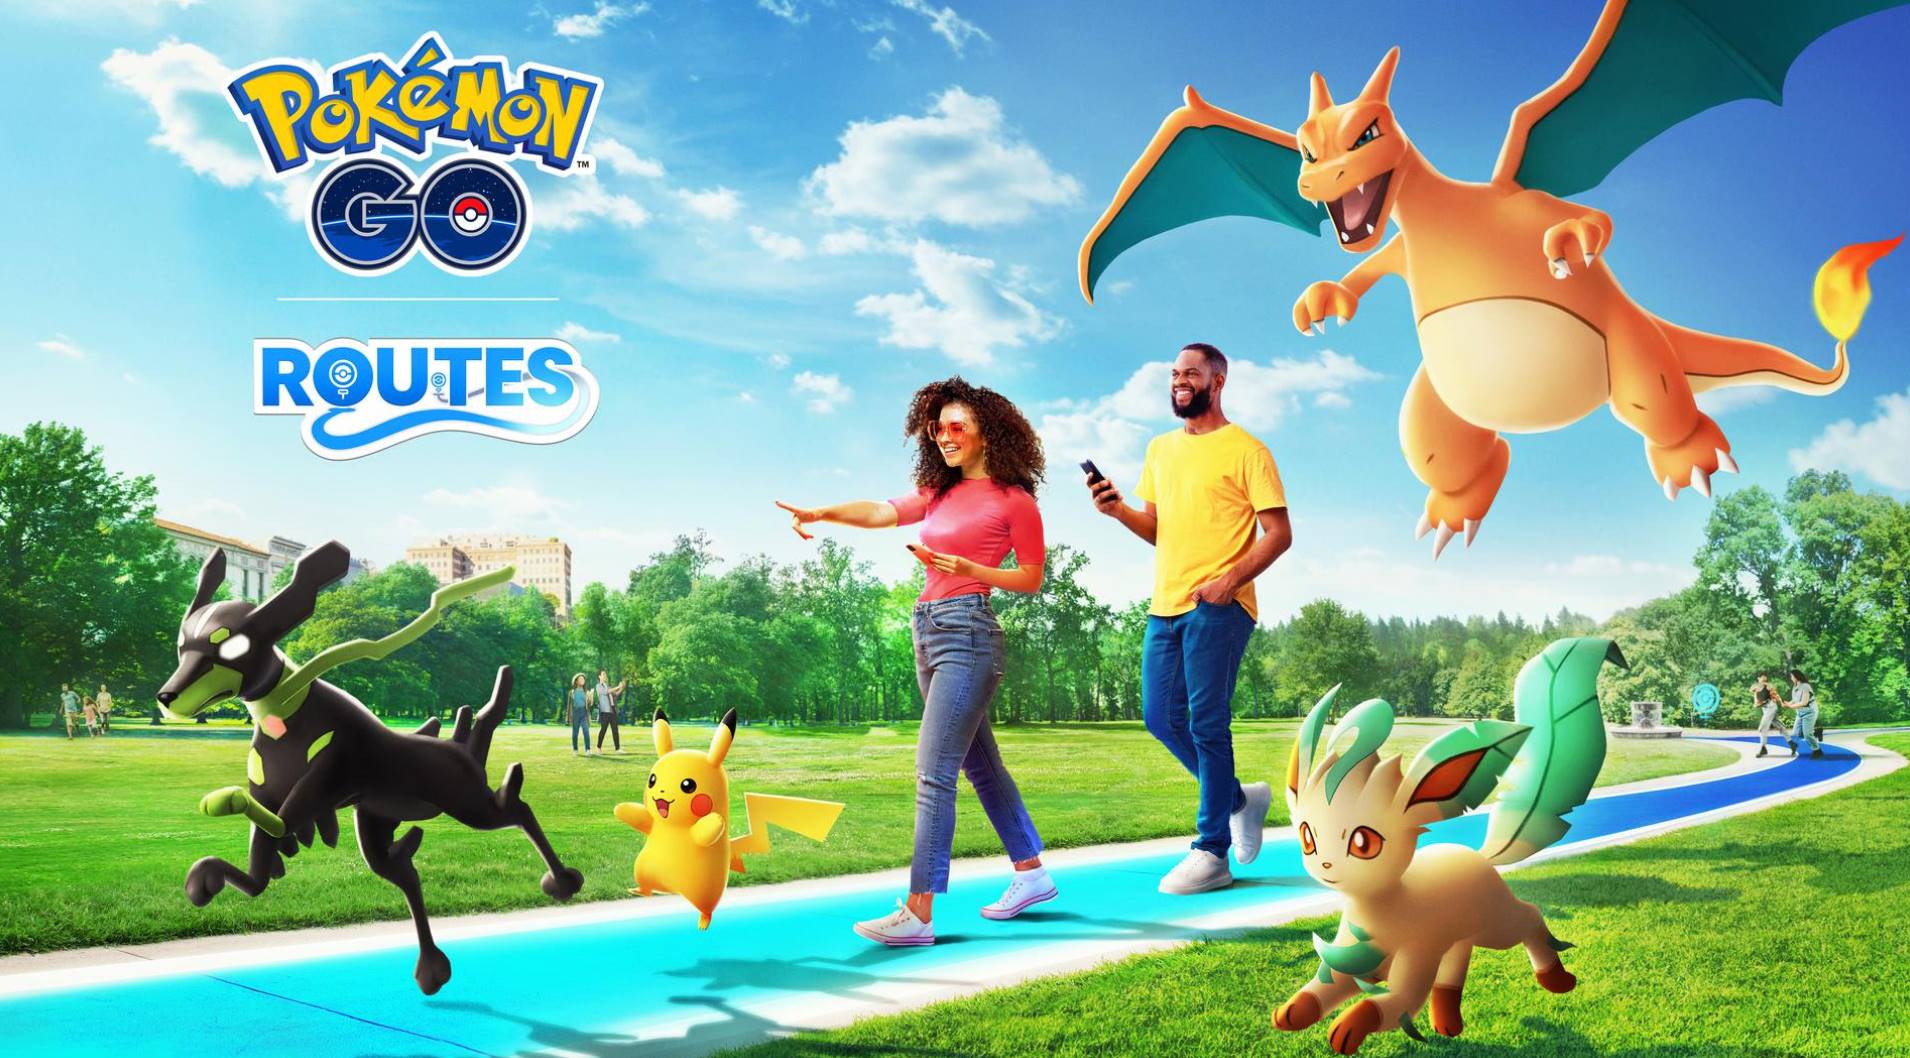 Su Pokémon GO arrivano i Percorsi, prima feature UGC del gioco